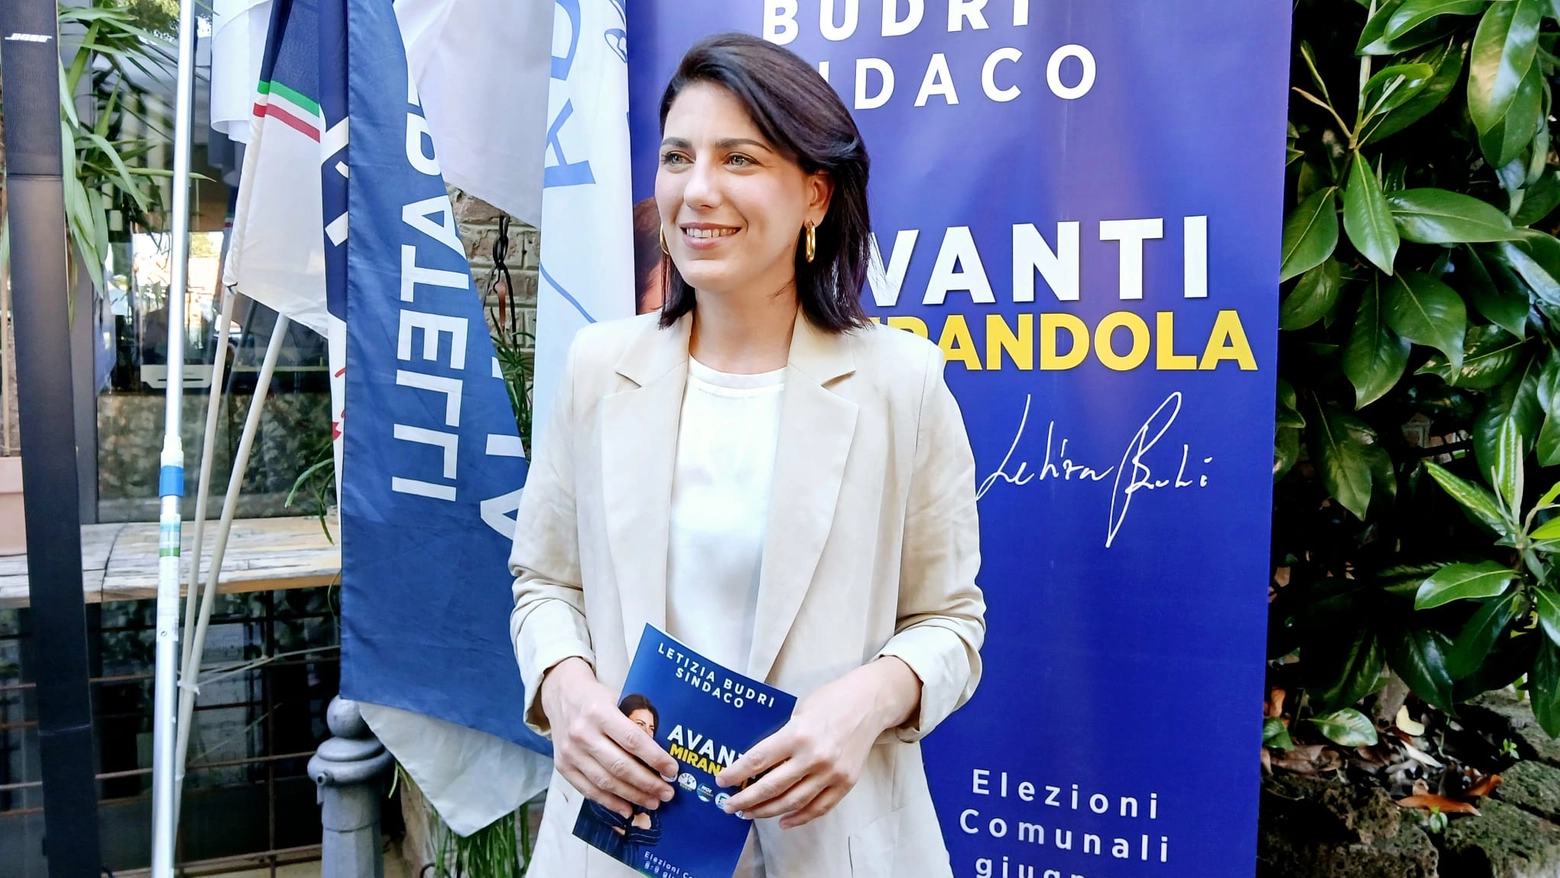 E' Letizia Budri (ex vicesindaco) il nuovo sindaco di Mirandola: la candidata di centrodestra ha battuto Carlo Bassoli per una manciata di voti (205)